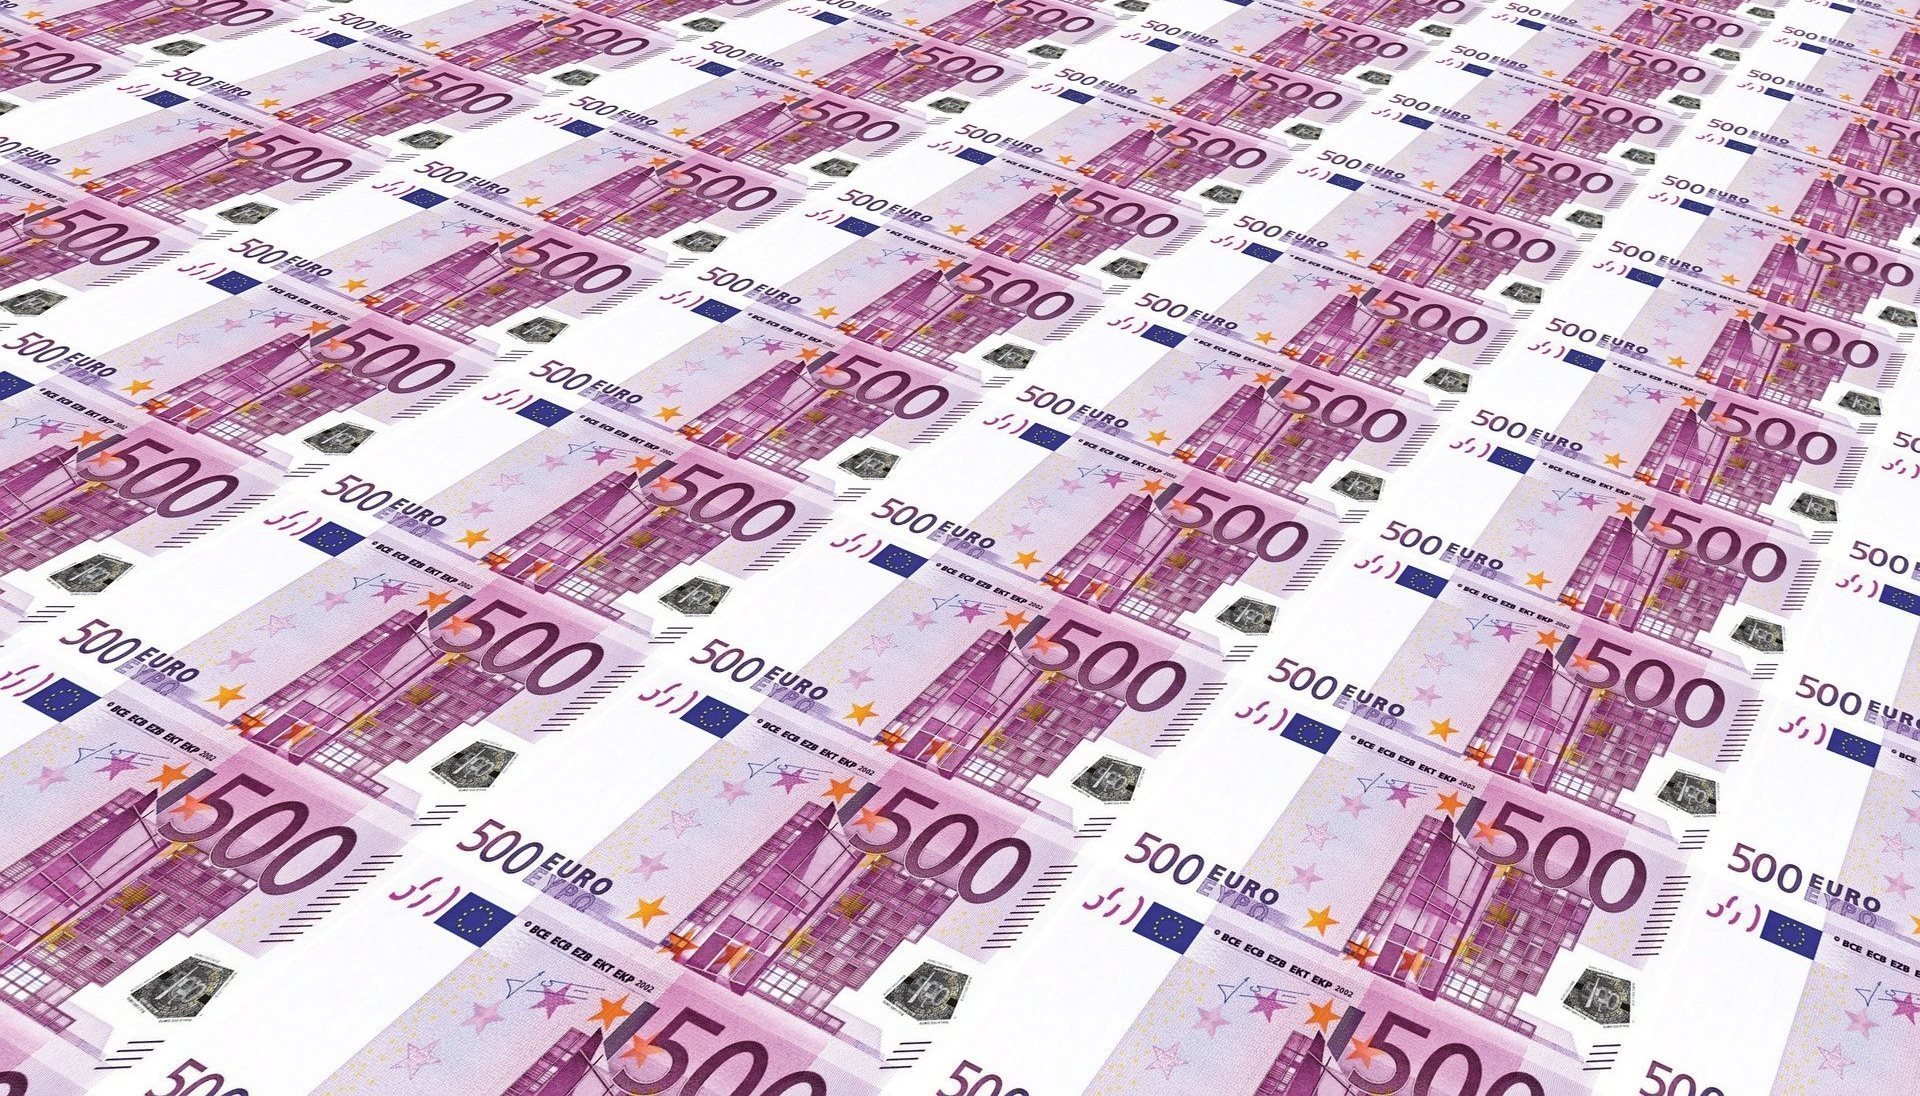 Un bărbat a găsit 1.300 de euro în fața unui bancomat și i-a luat. Polițiștii îl cercetează